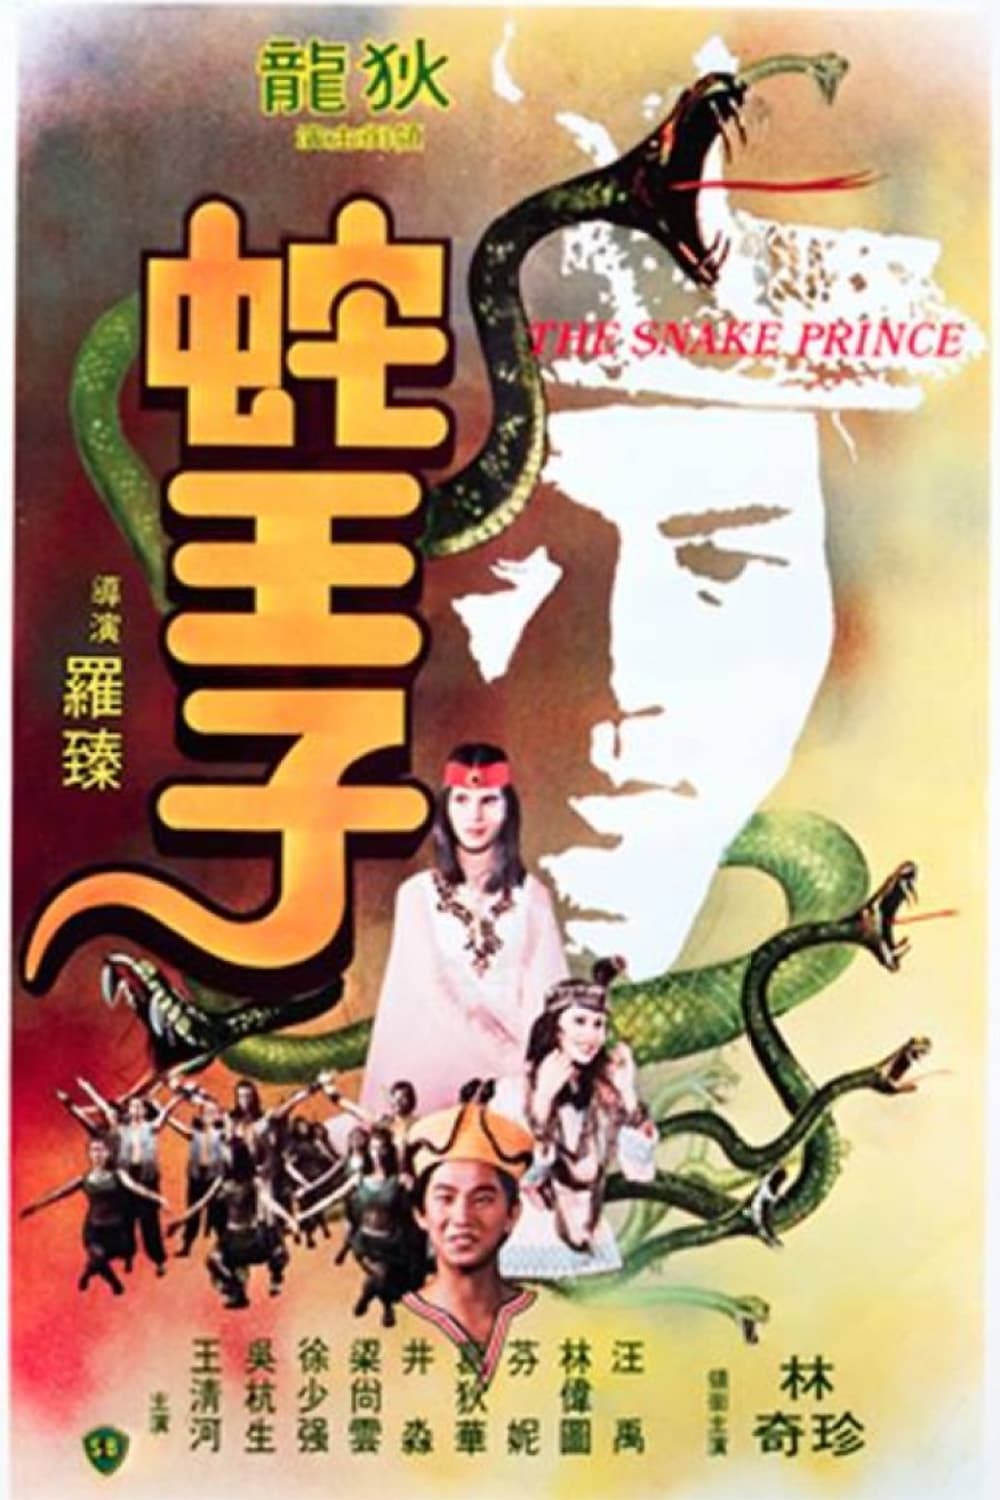 The Snake Prince (1976)